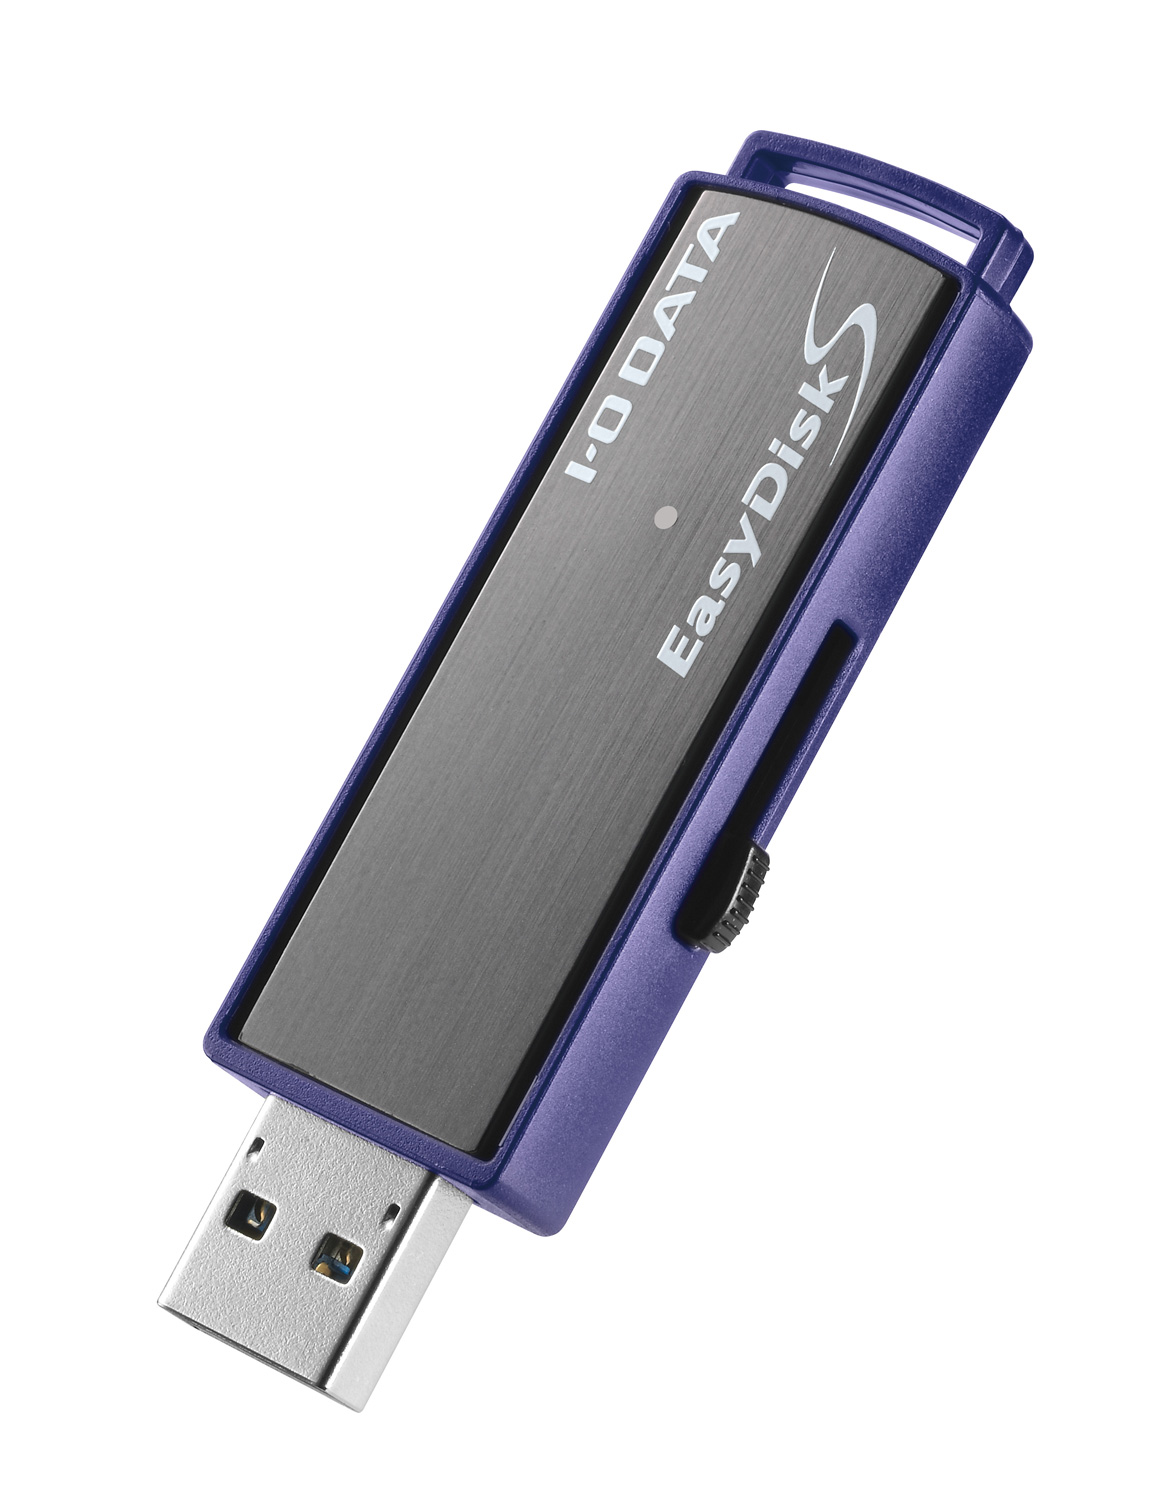 予約販売】本-IODATA USBメモリー EasyDisk ED-V4/4GR5 [4GB] [容量